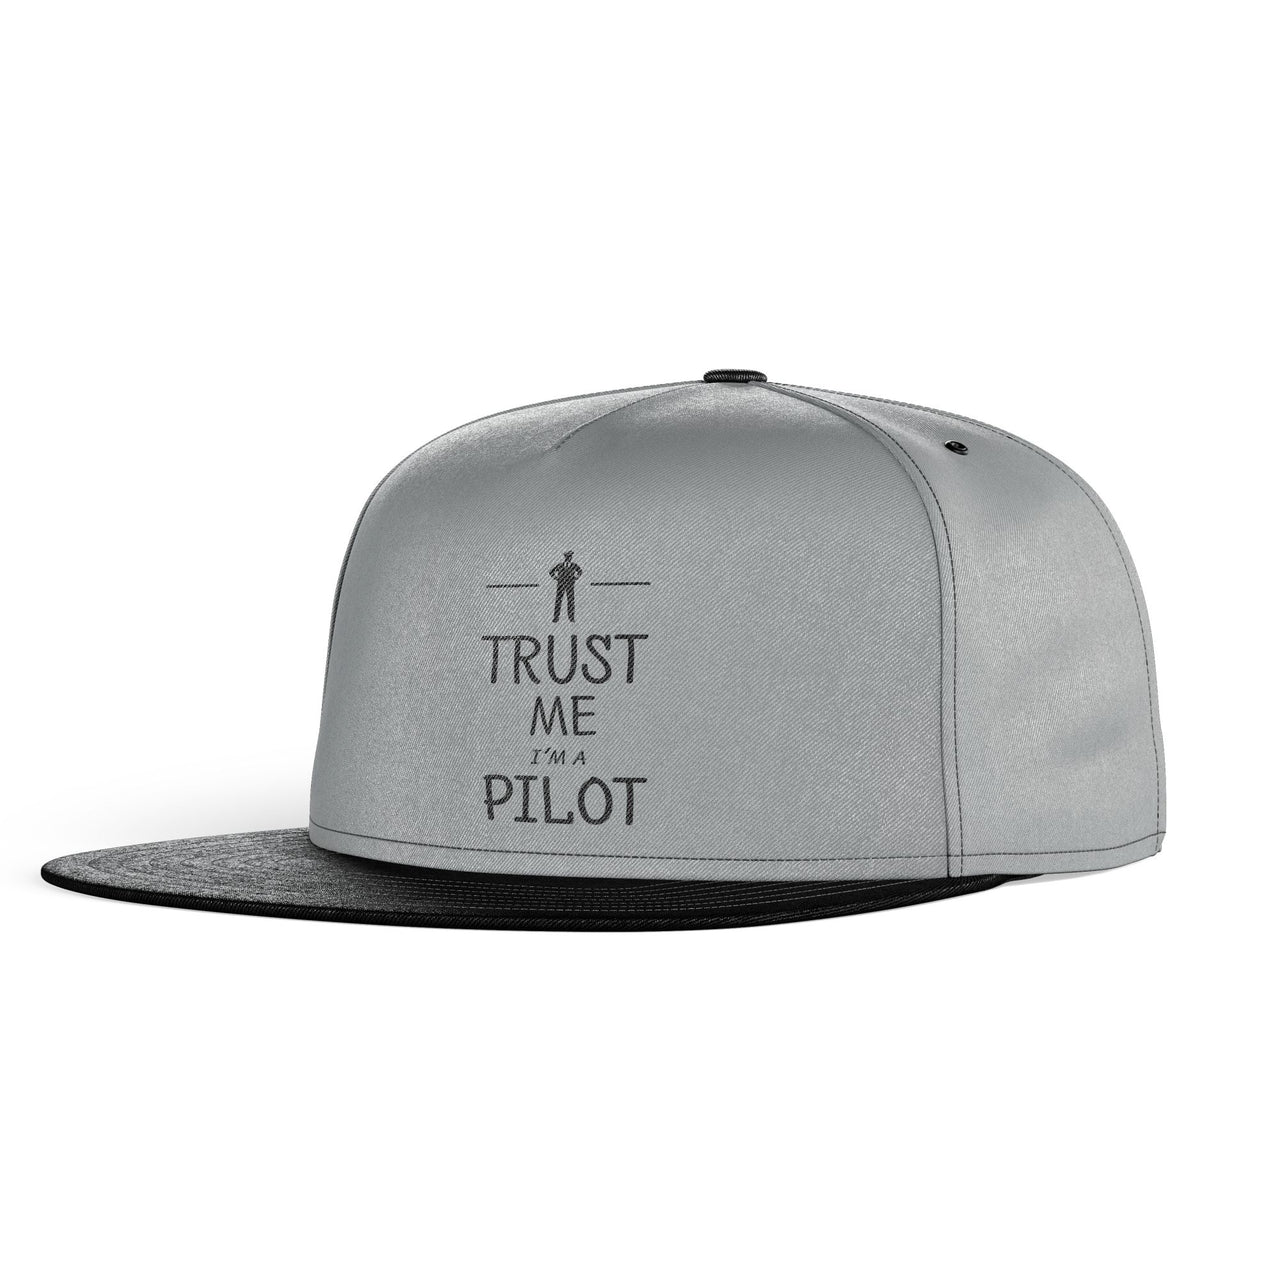 Trust Me I'm a Pilot Designed Snapback Caps & Hats